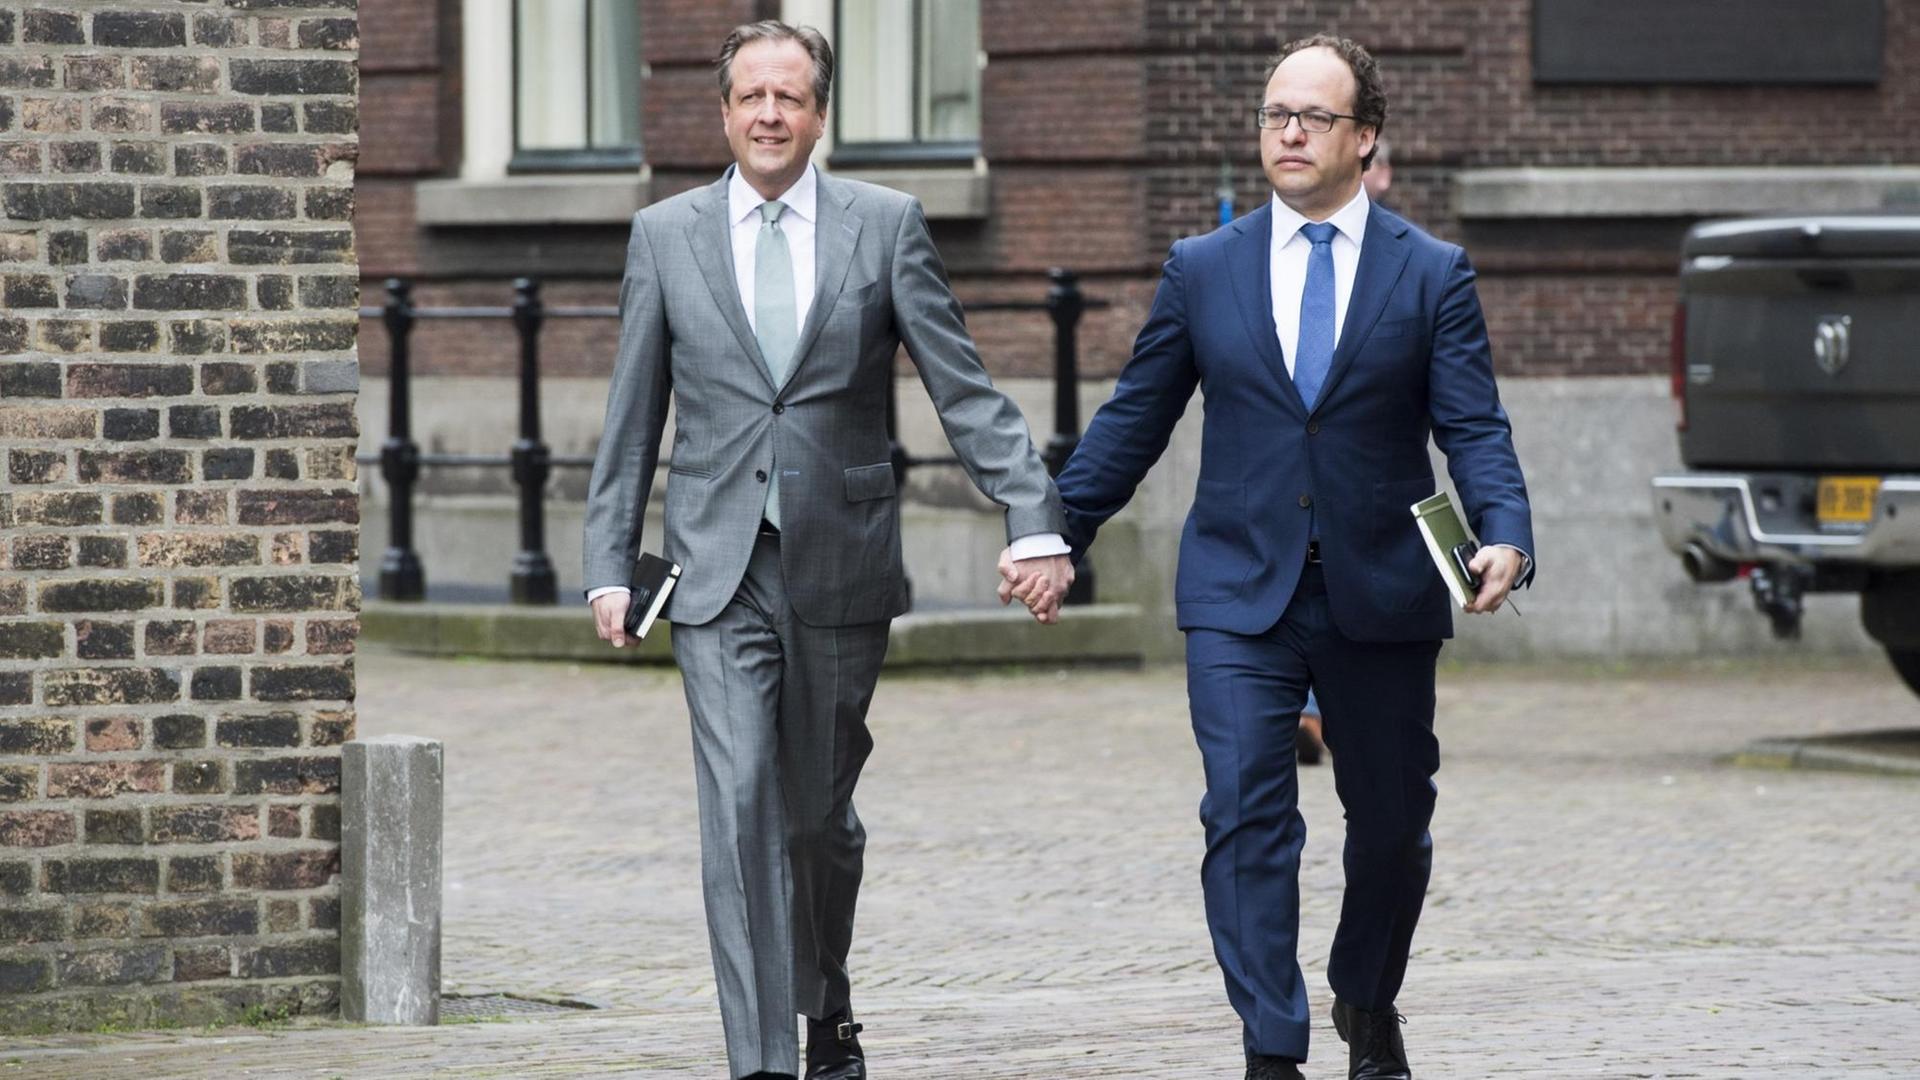 Alexander Pechtold (l) und Wouter Koolmees, niederländische Politiker der Democraten 66 (D66), kommen händchenhaltend zu einer Pressekonferenz. So wollten sie ein Zeichen gegen schwulenfeindliche Gewalt setzen.